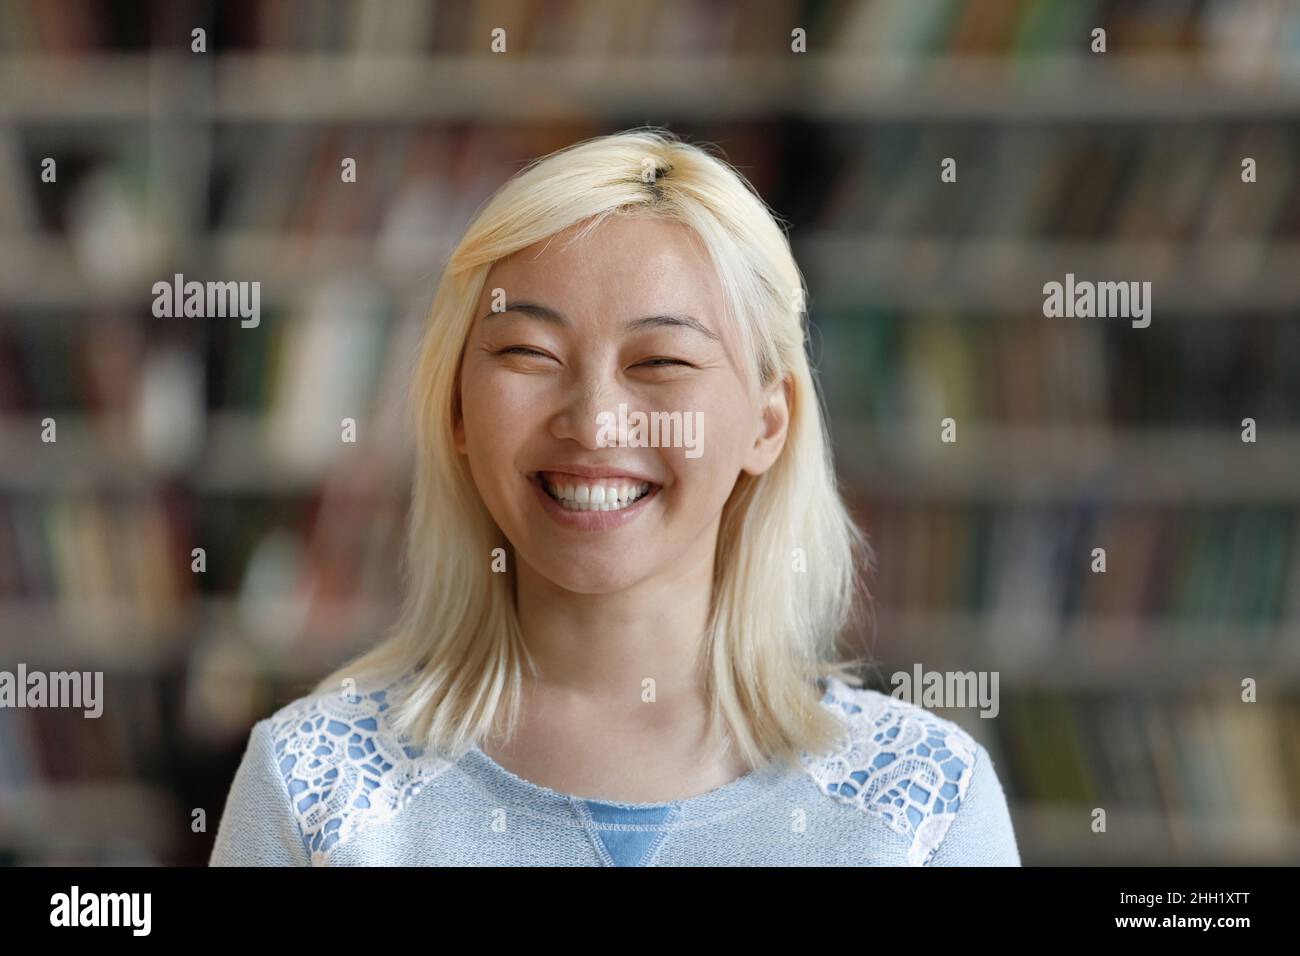 Glücklich aufgeregt asiatische blonde junge Frau Kopf geschossen Porträt Stockfoto